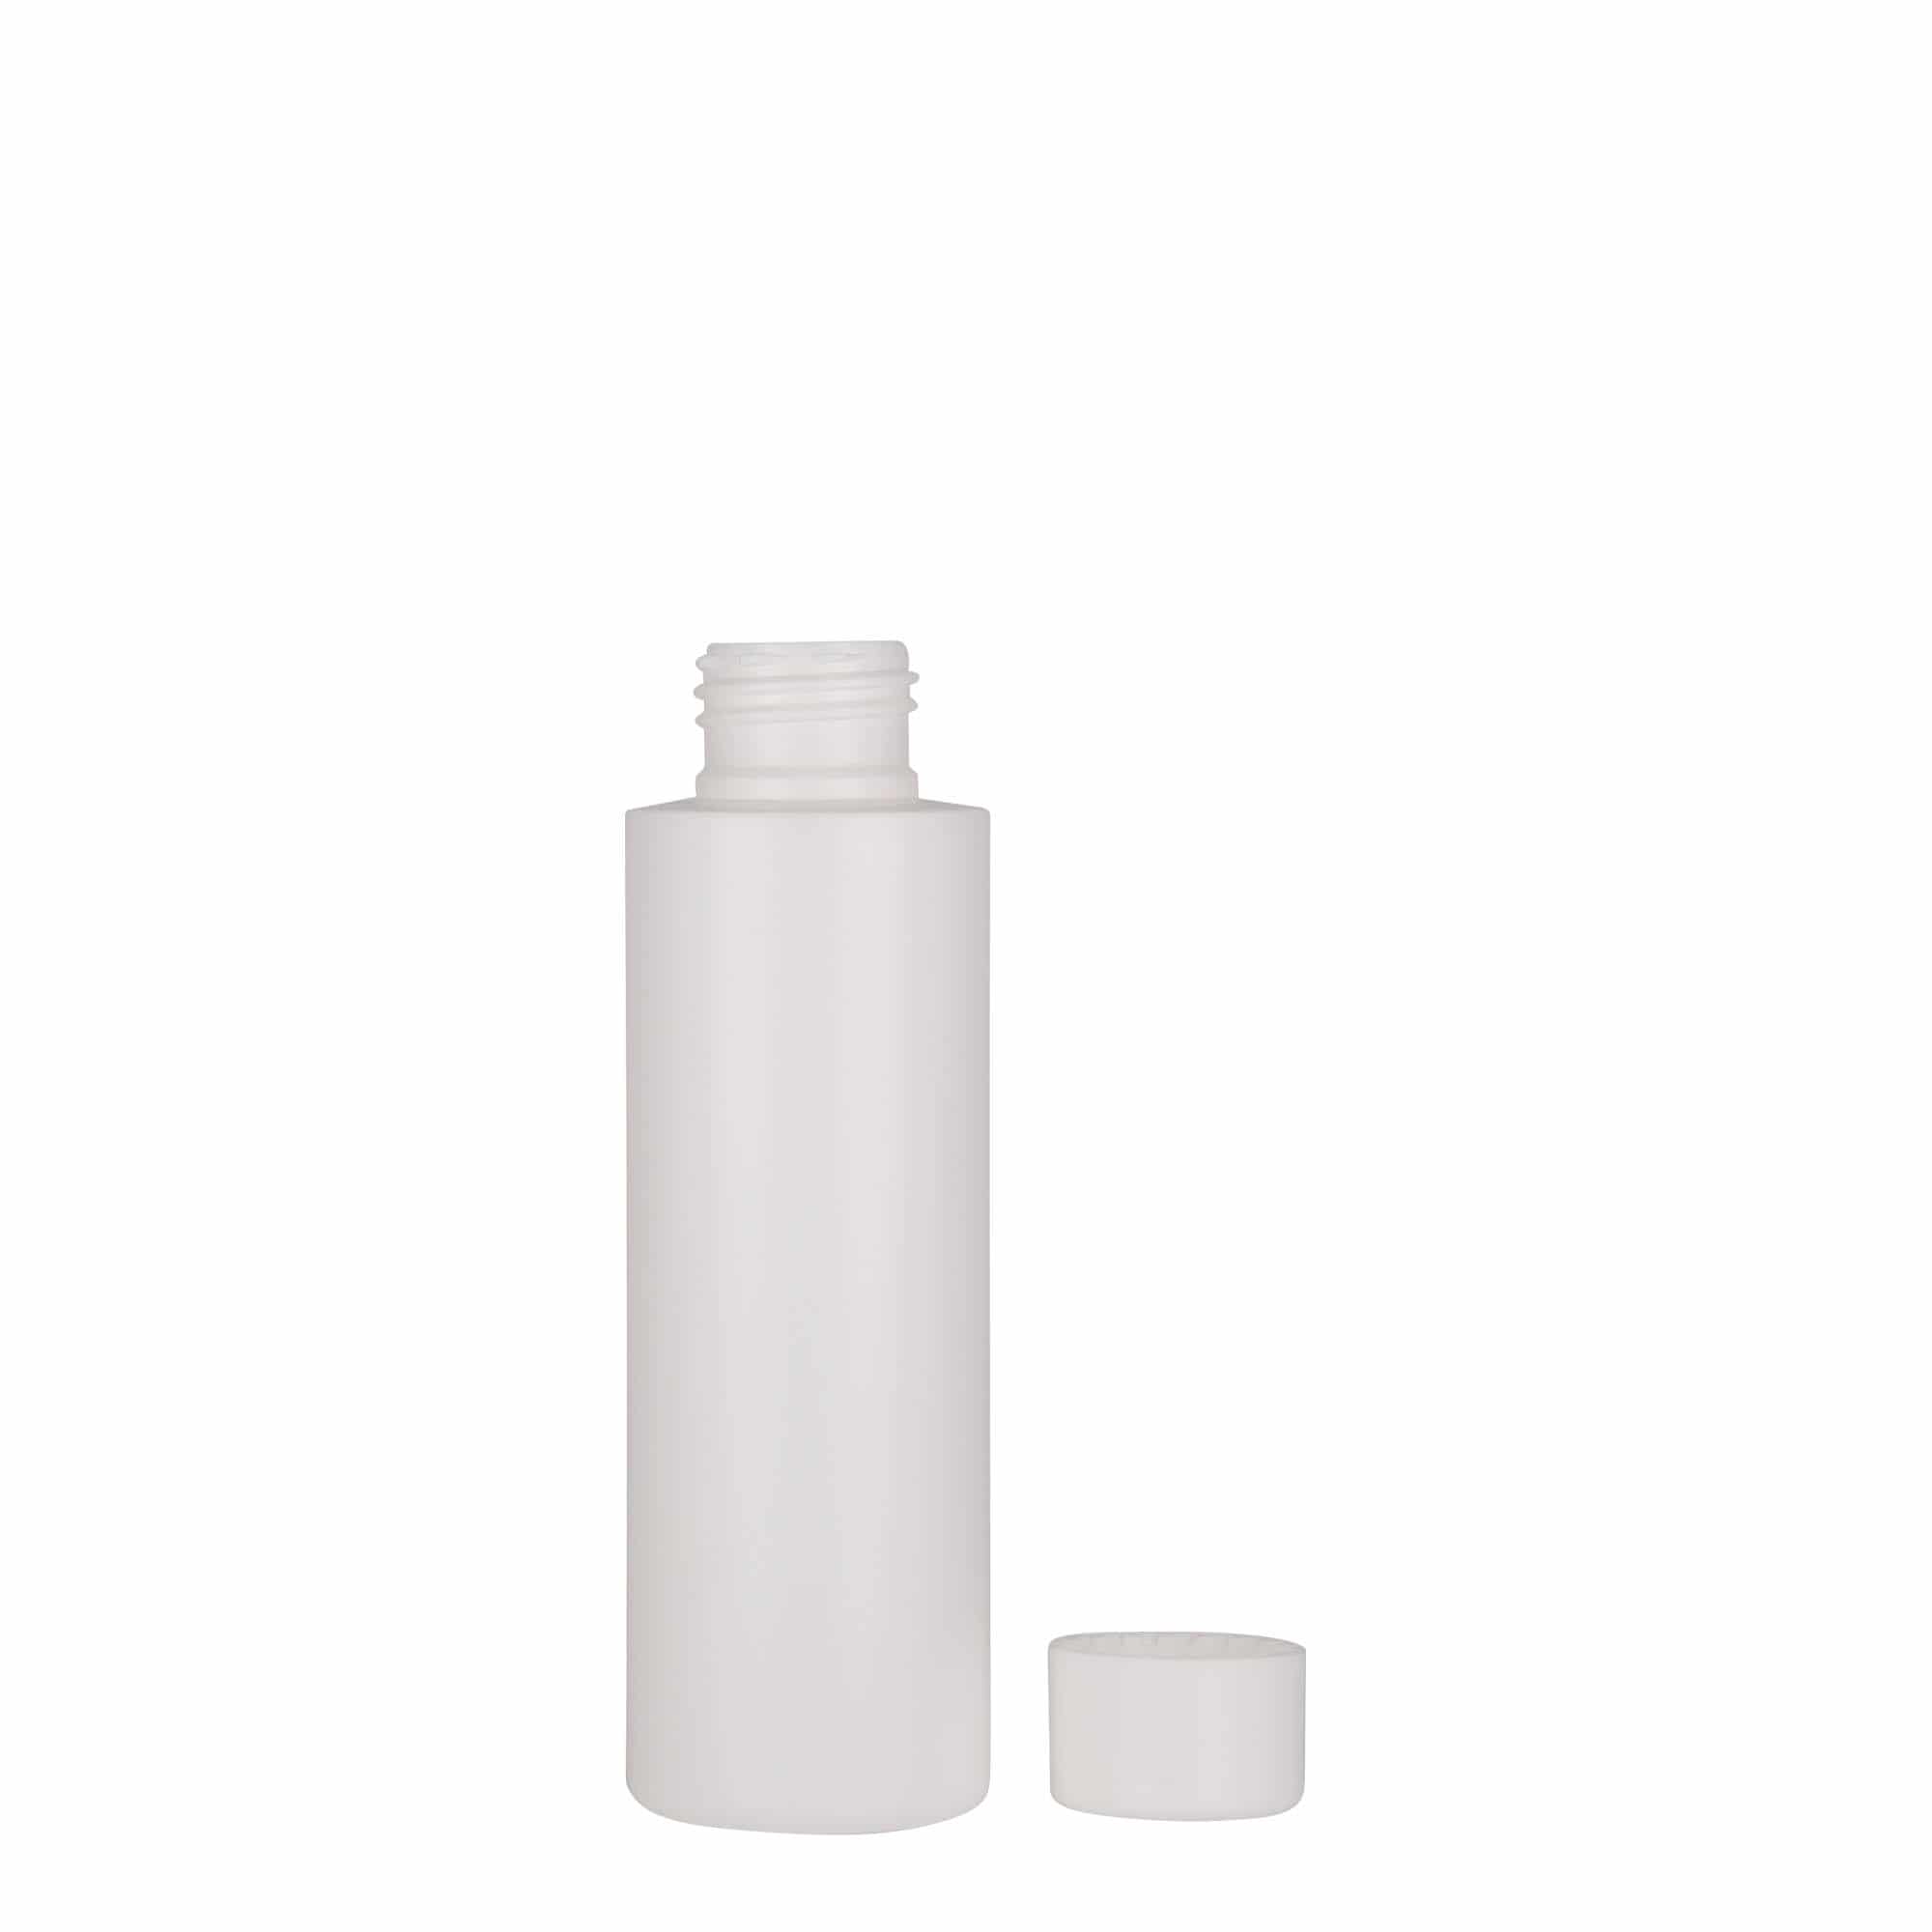 100 ml plastflaske 'Pipe', HDPE, hvid, åbning: GPI 24/410